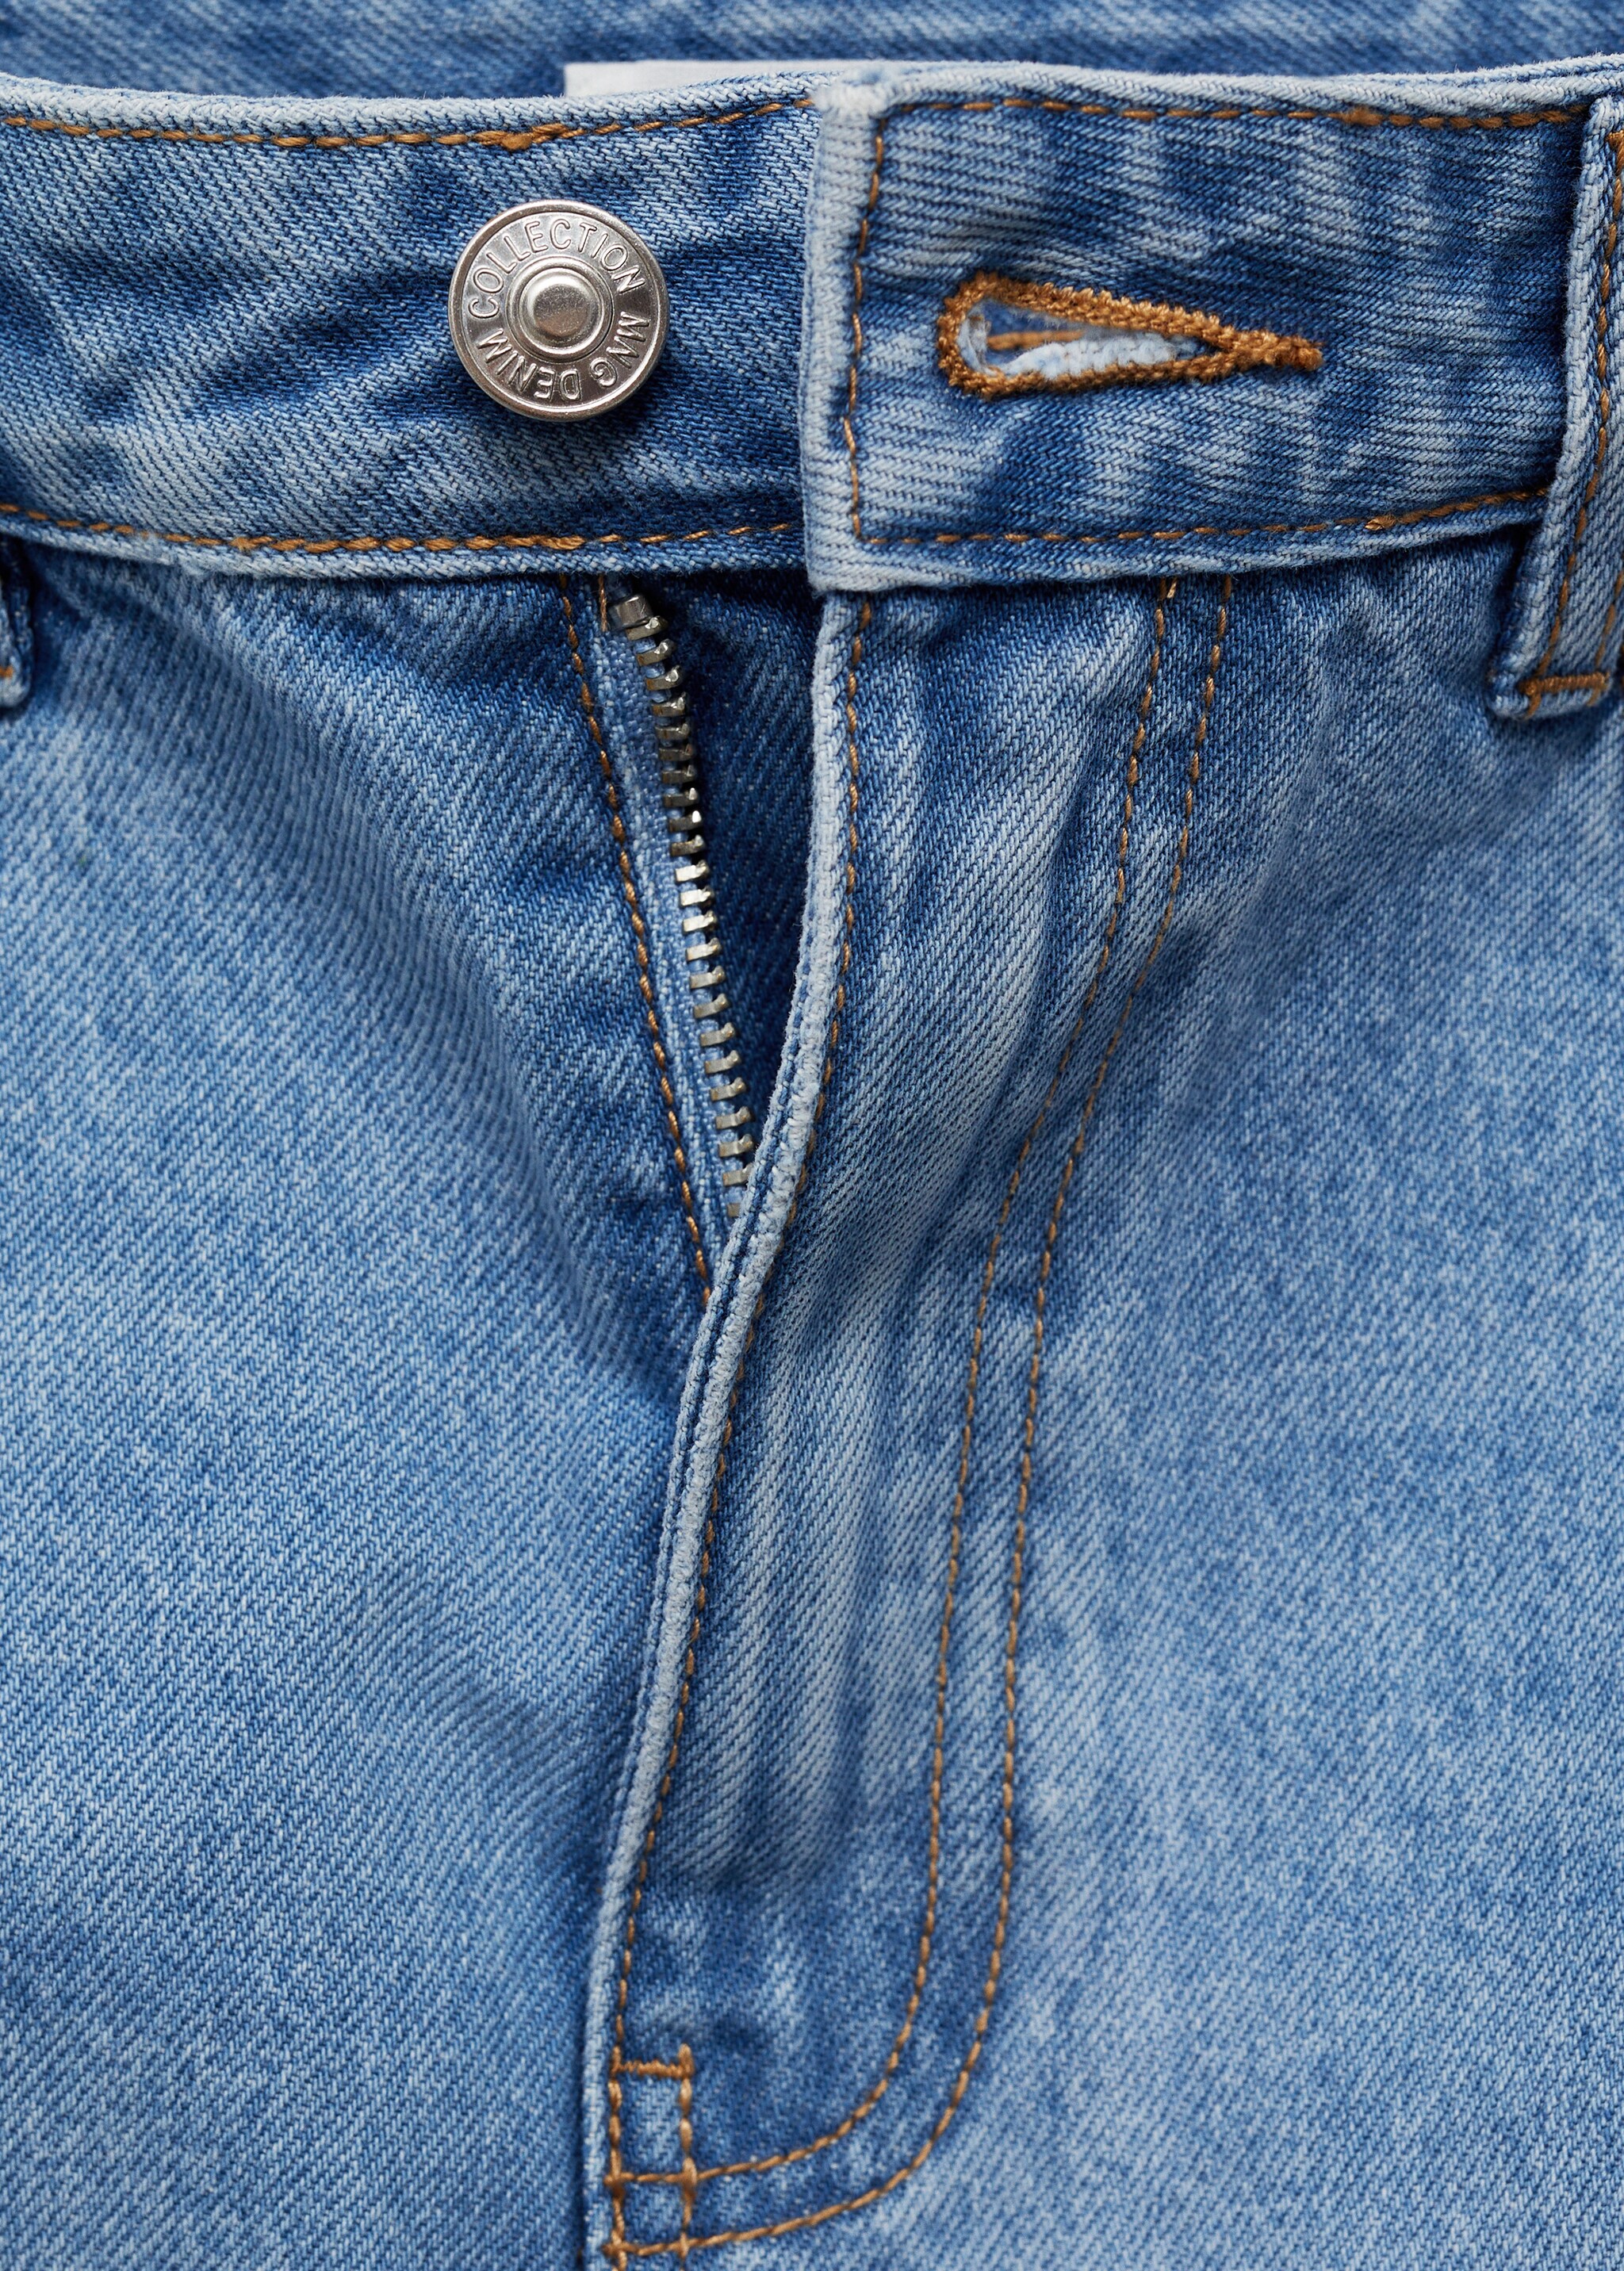 Jeans-Minirock - Detail des Artikels 8